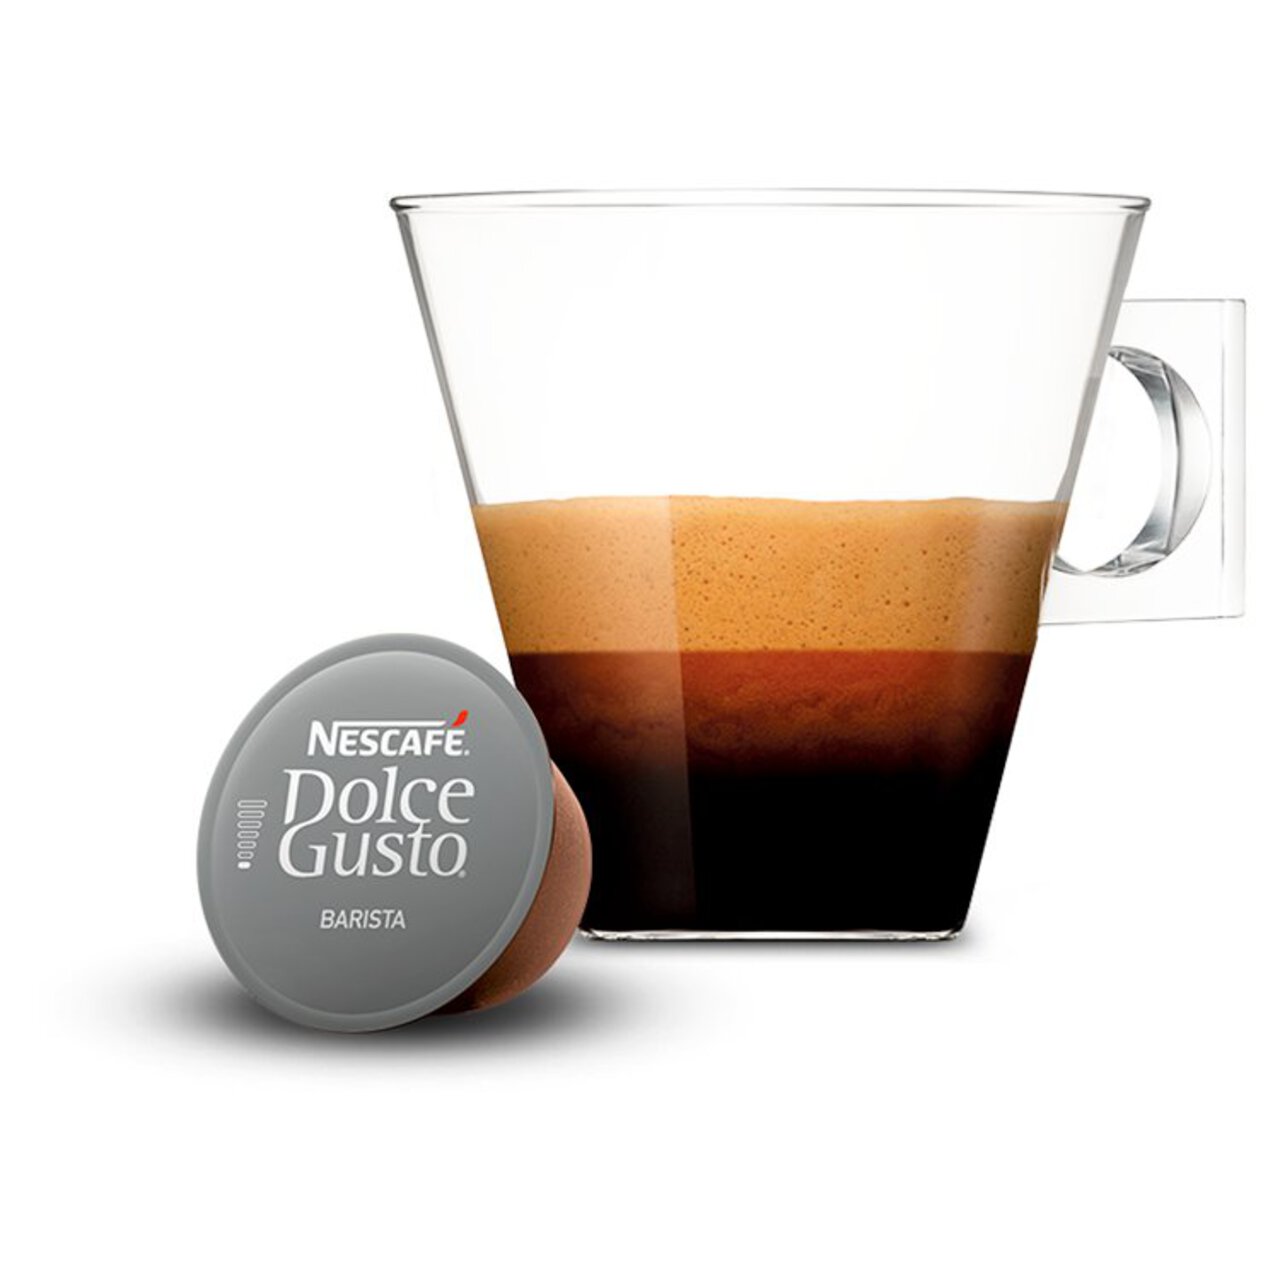 Nescafe Dolce Gusto Espresso Barista Pods 3 x 112g